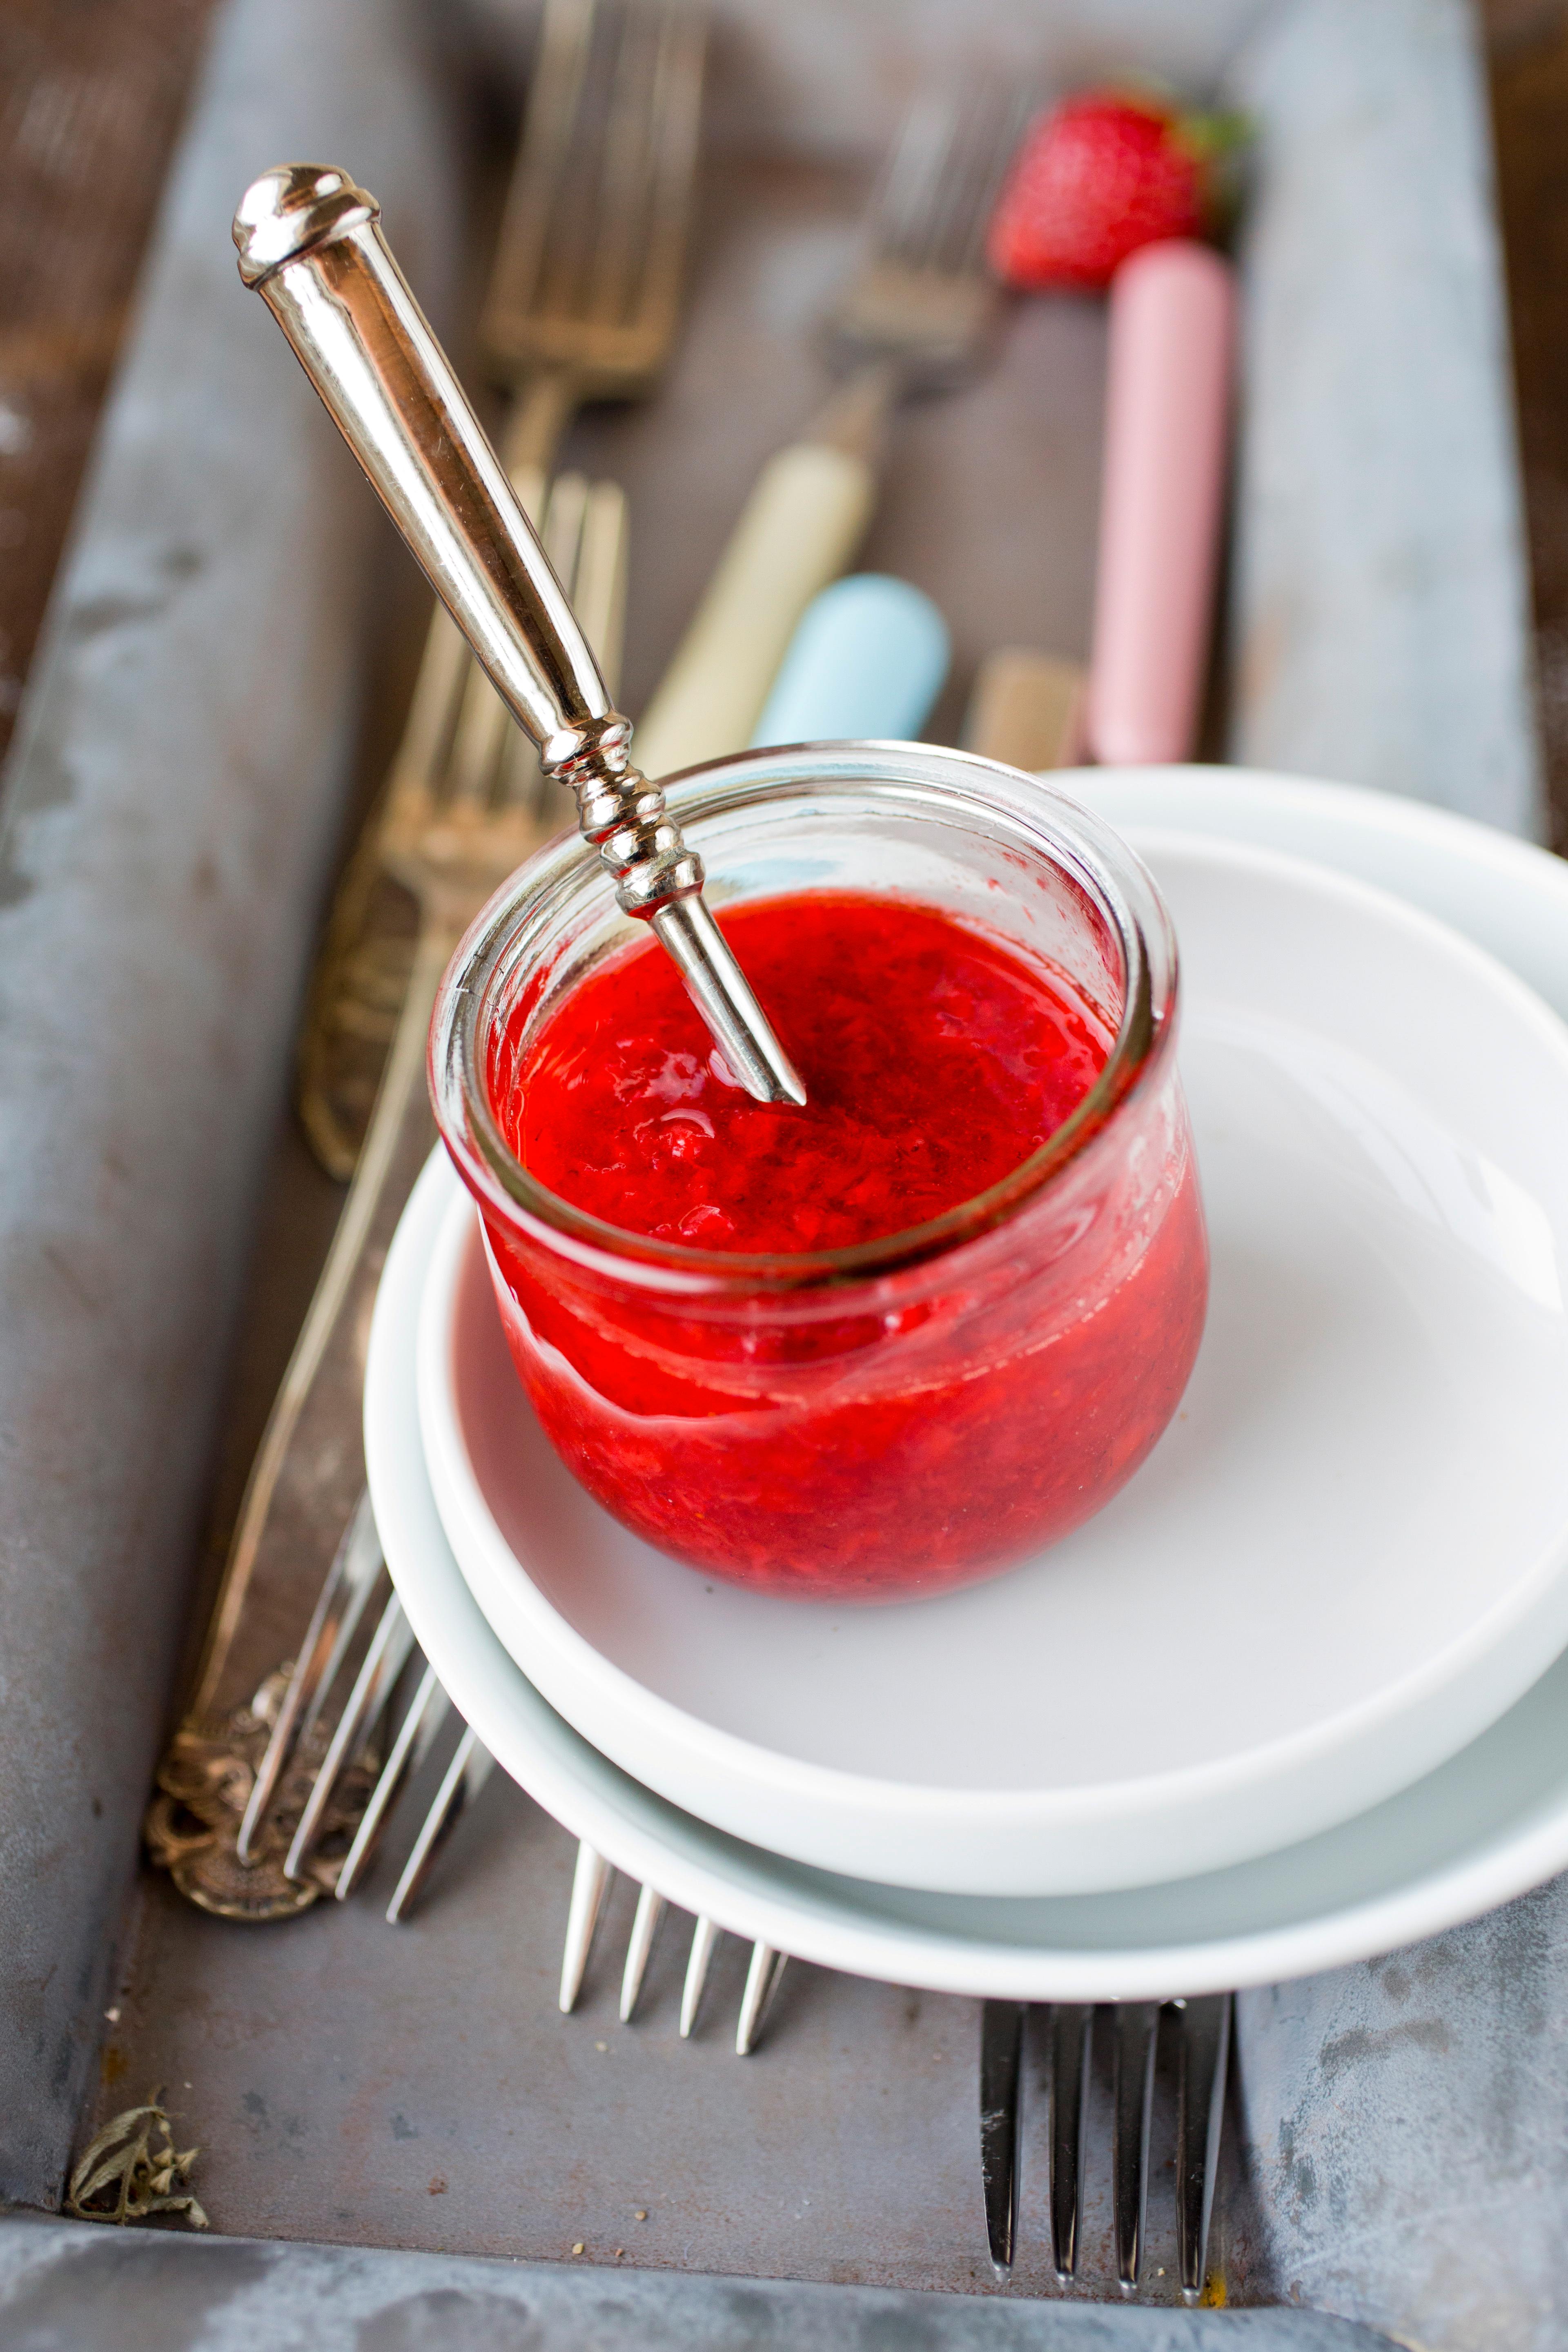 SOMMER: Knuste jordbær med sukker på skiva er en go-to frokost for Ommundsen.